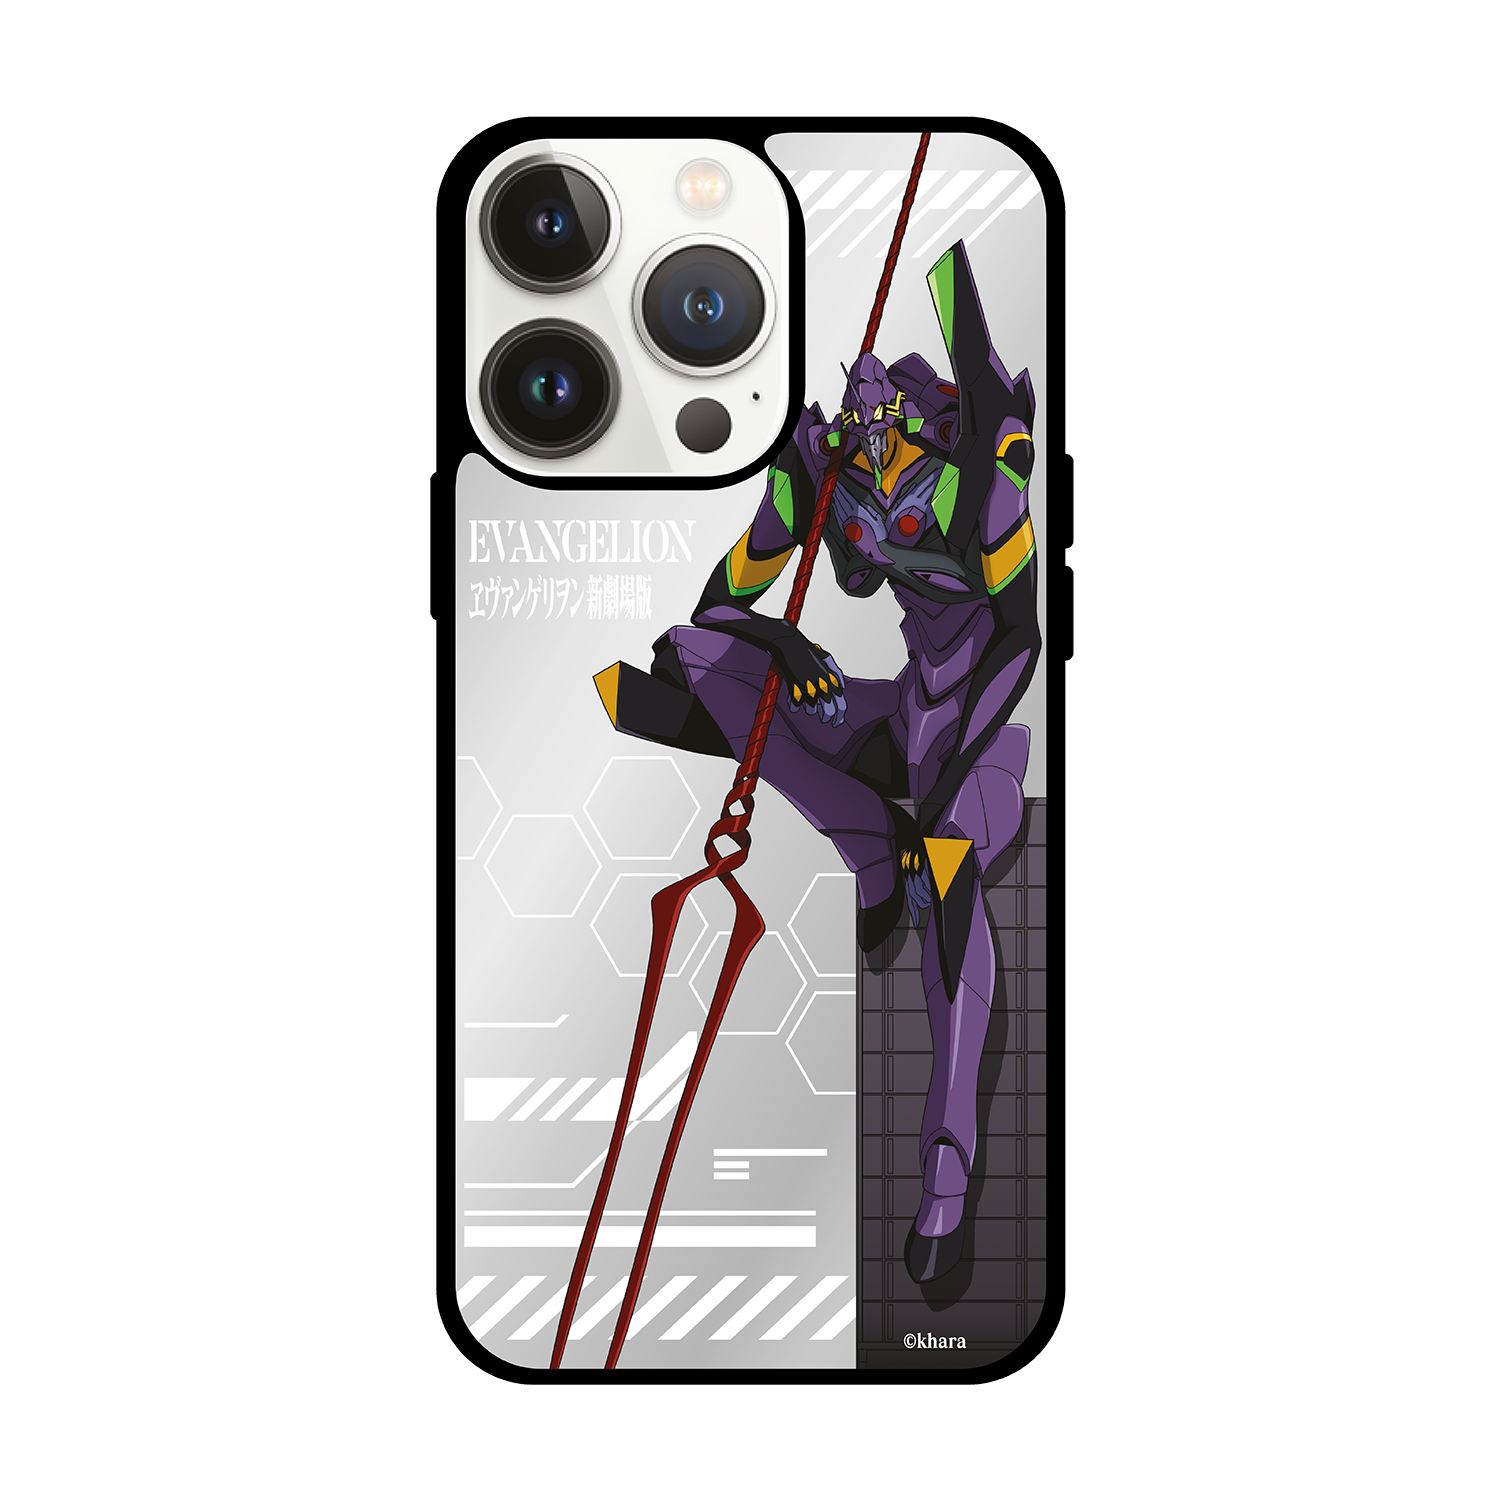 Evangelion 新世紀福音戰士 iPhone Mirror Case / Samsung Mirror Case (M-EVA-13)